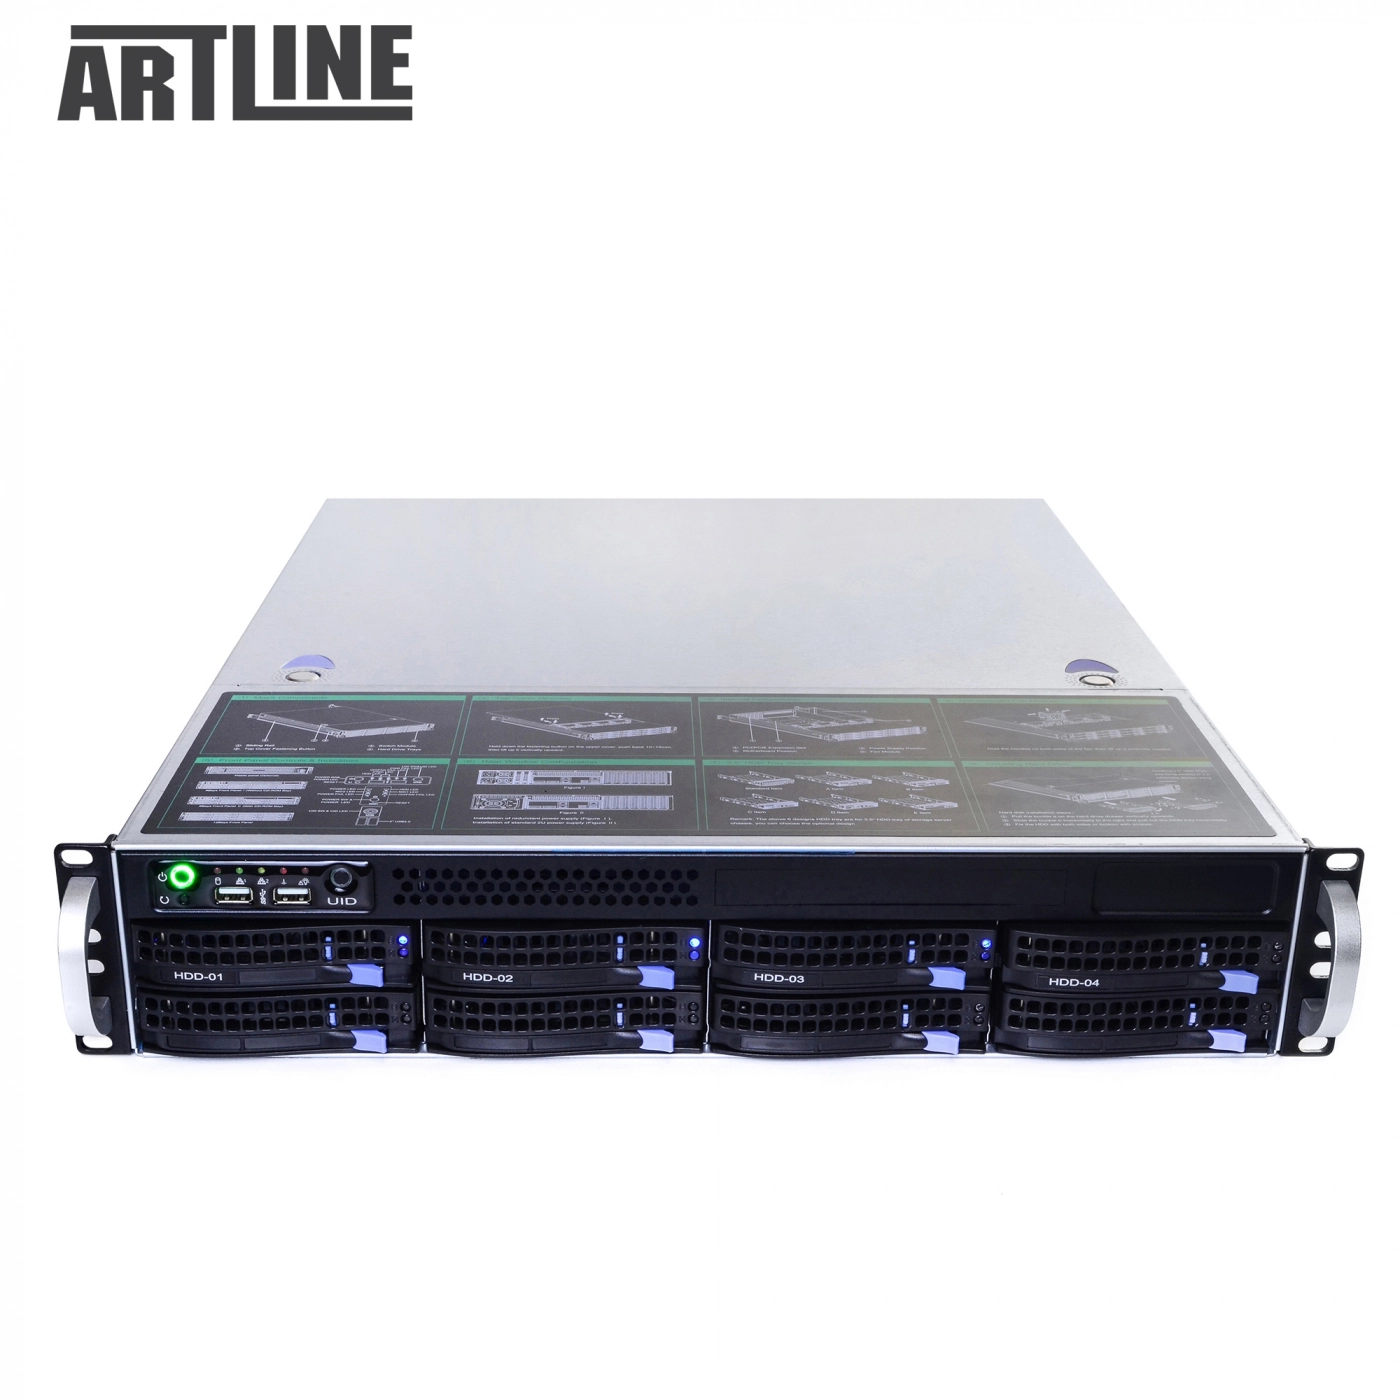 Купить Сервер ARTLINE Business R35v01 - фото 10